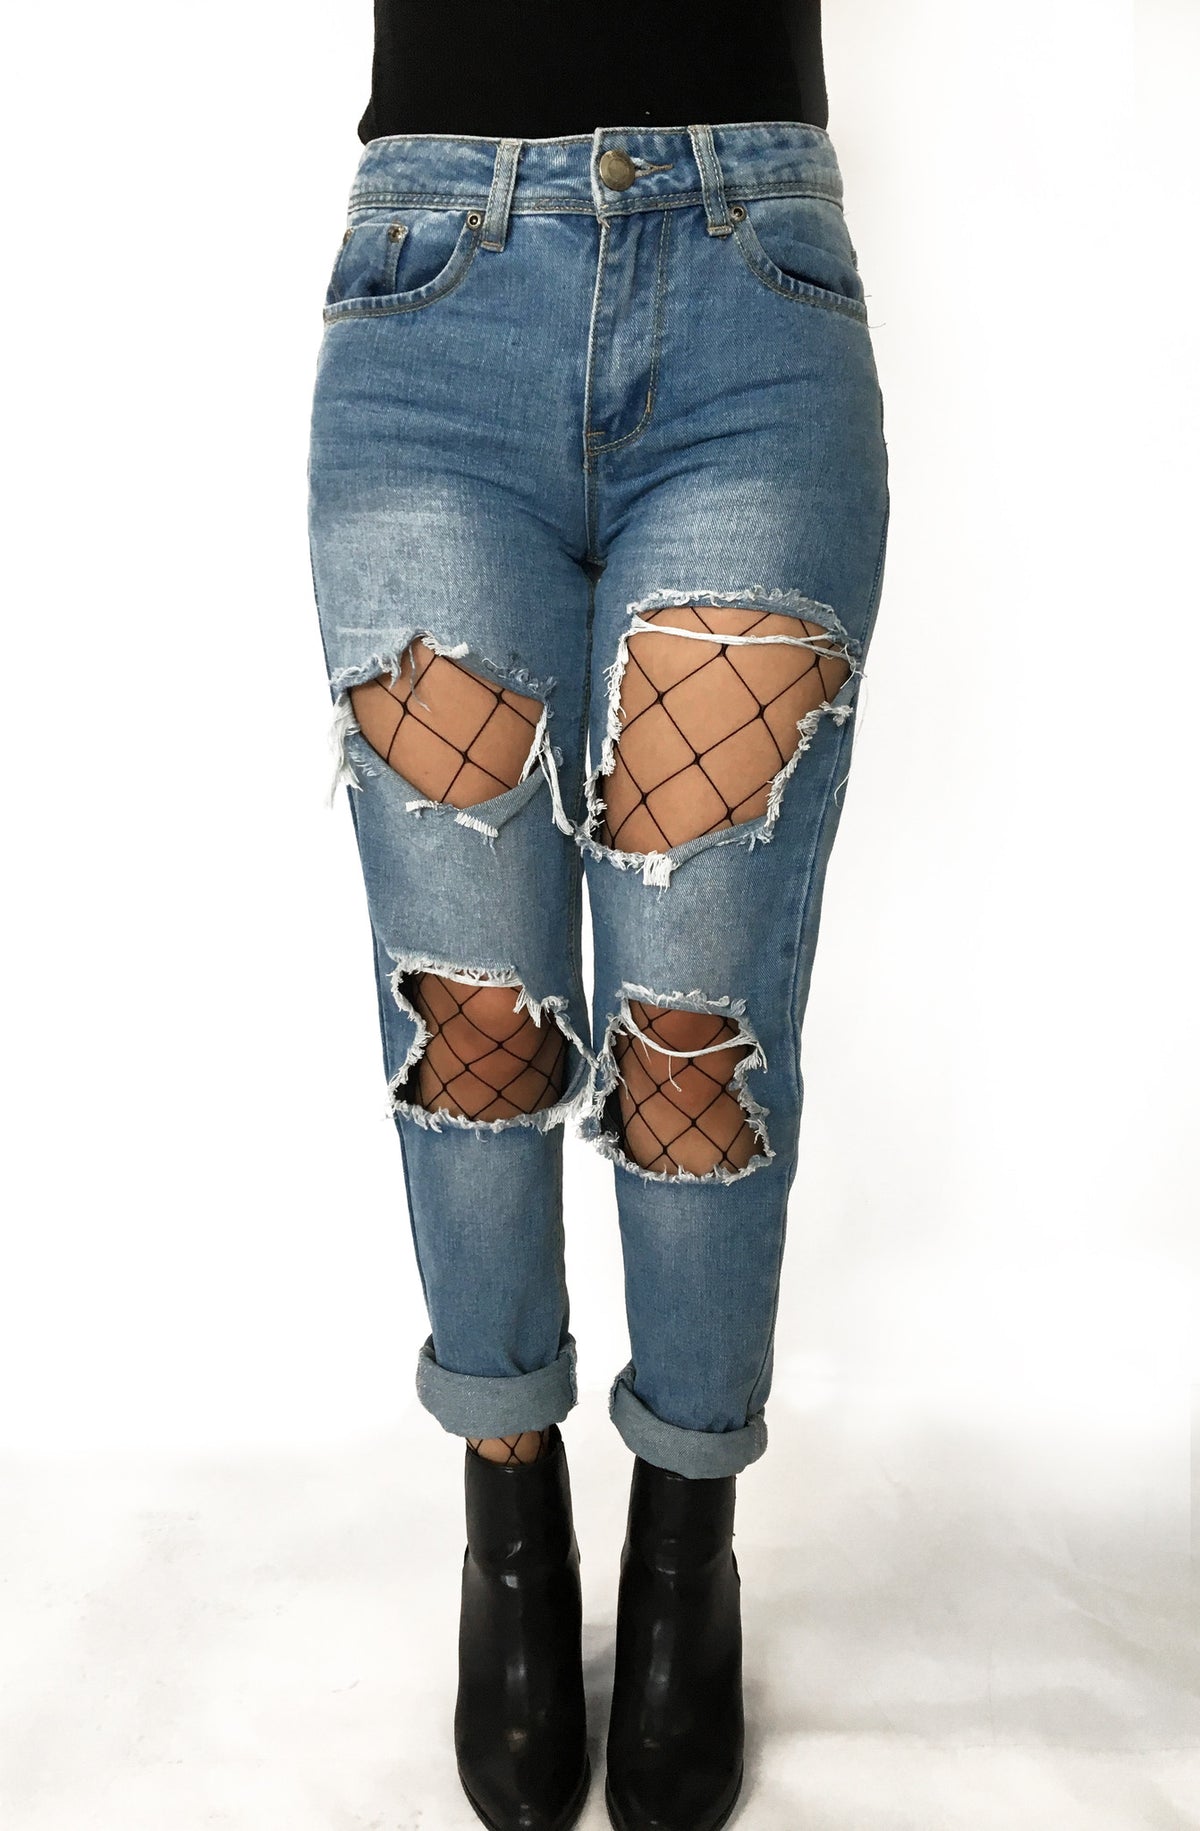 fishnet leggings under jeans